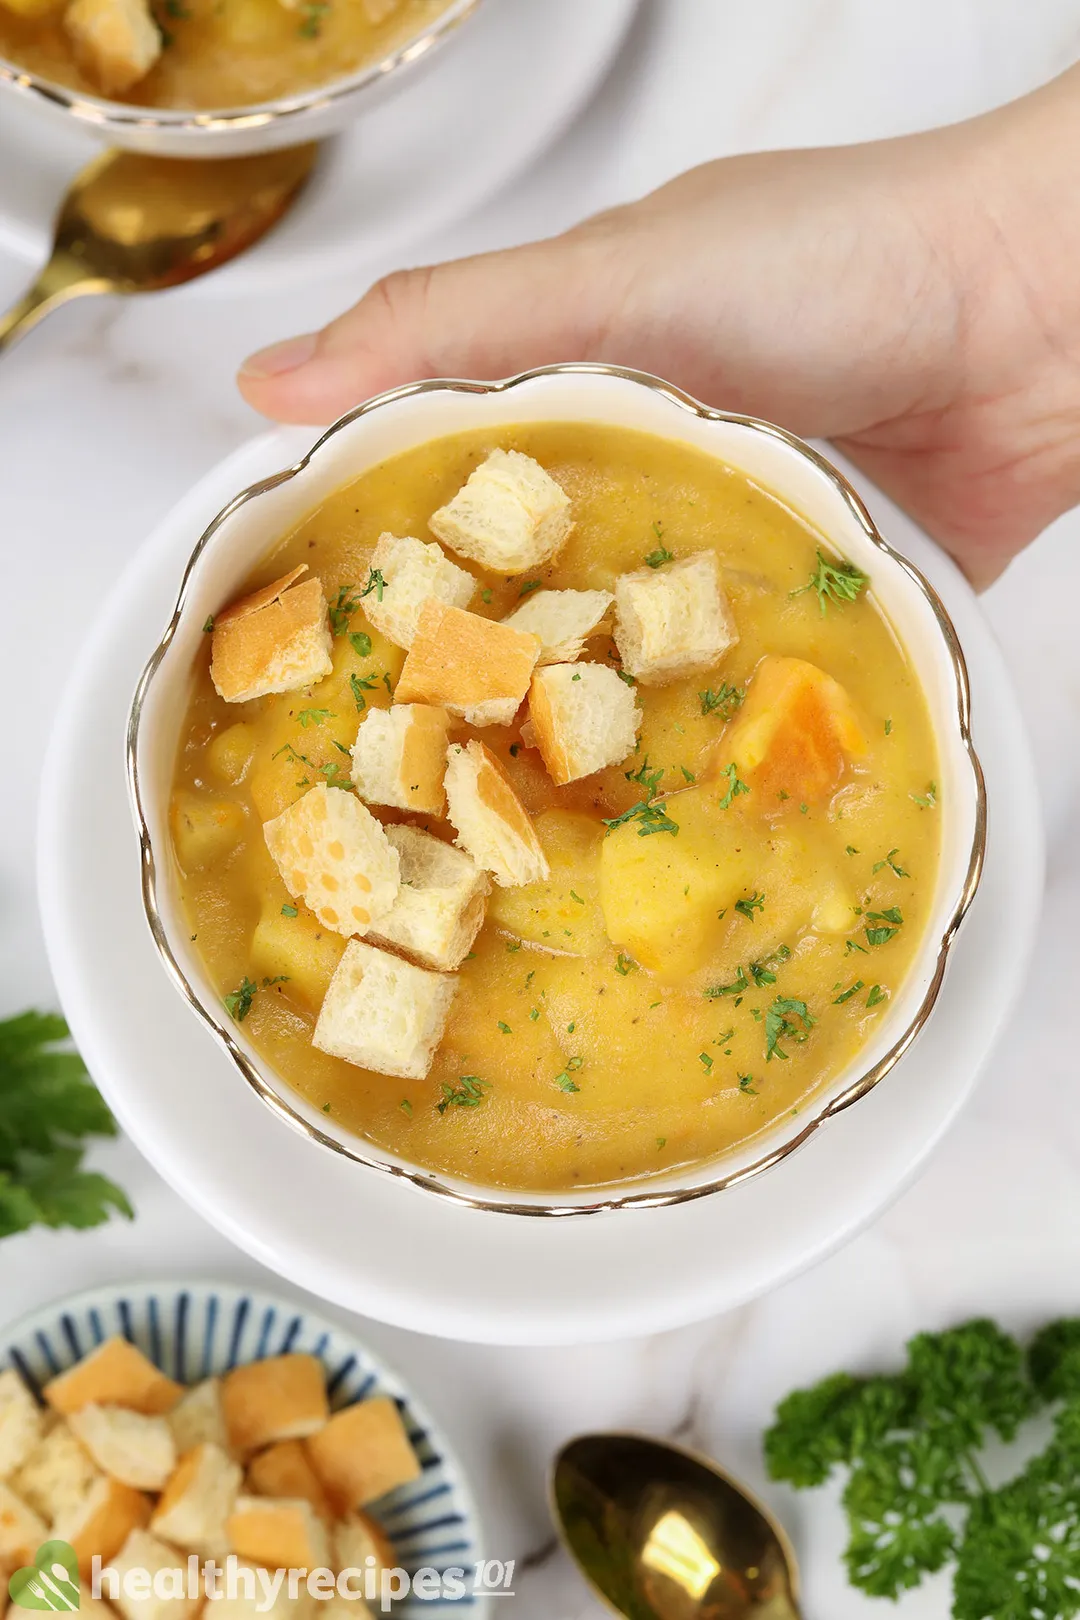 a hand holding a bowl of potato soup